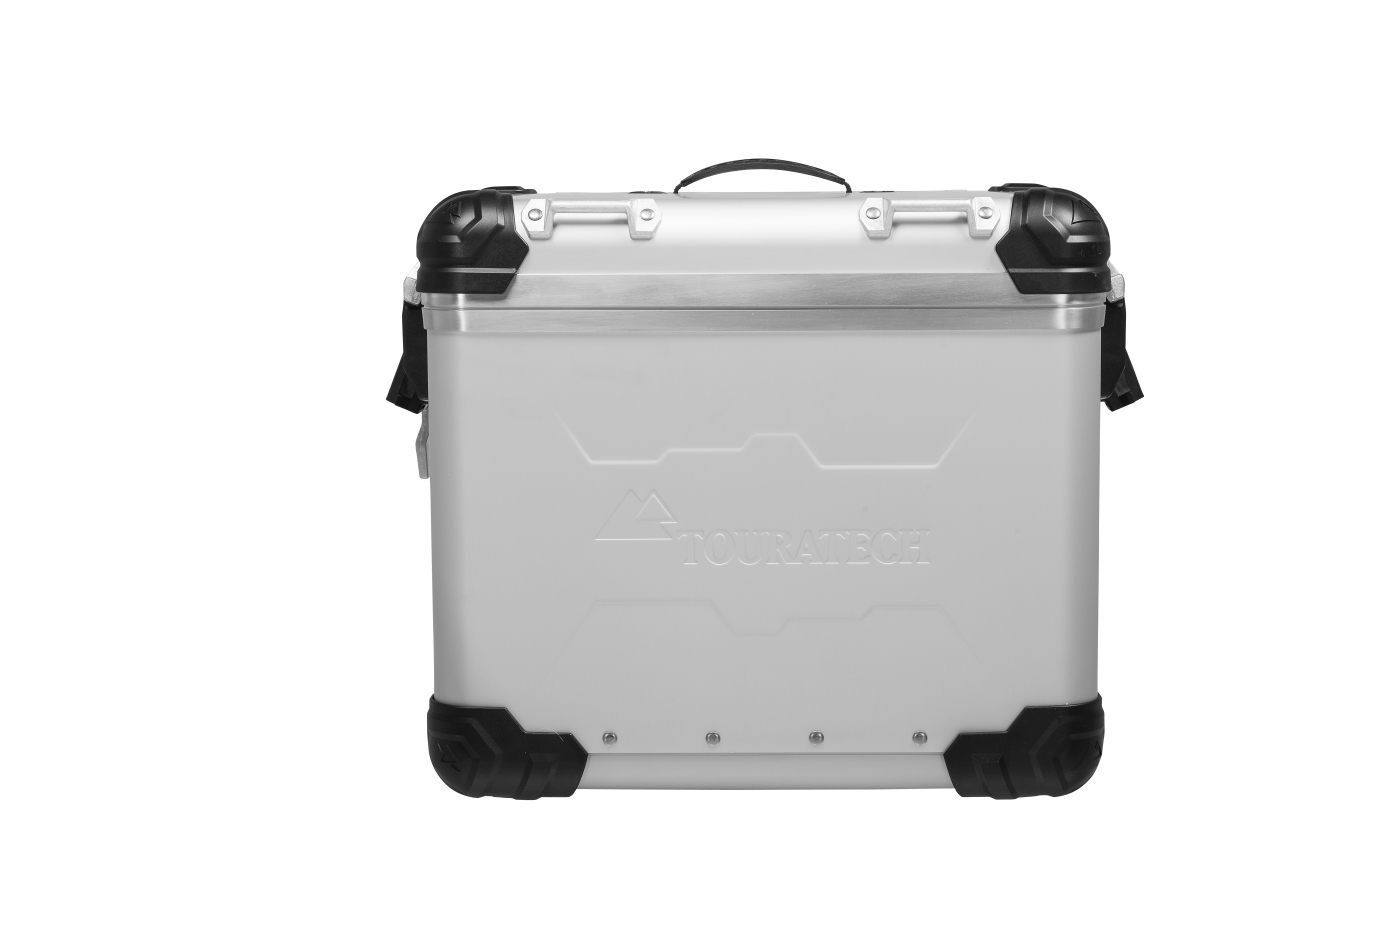 Acquista Online ZEGA Evo And-S valigia alluminio, 45 litri, sinistra